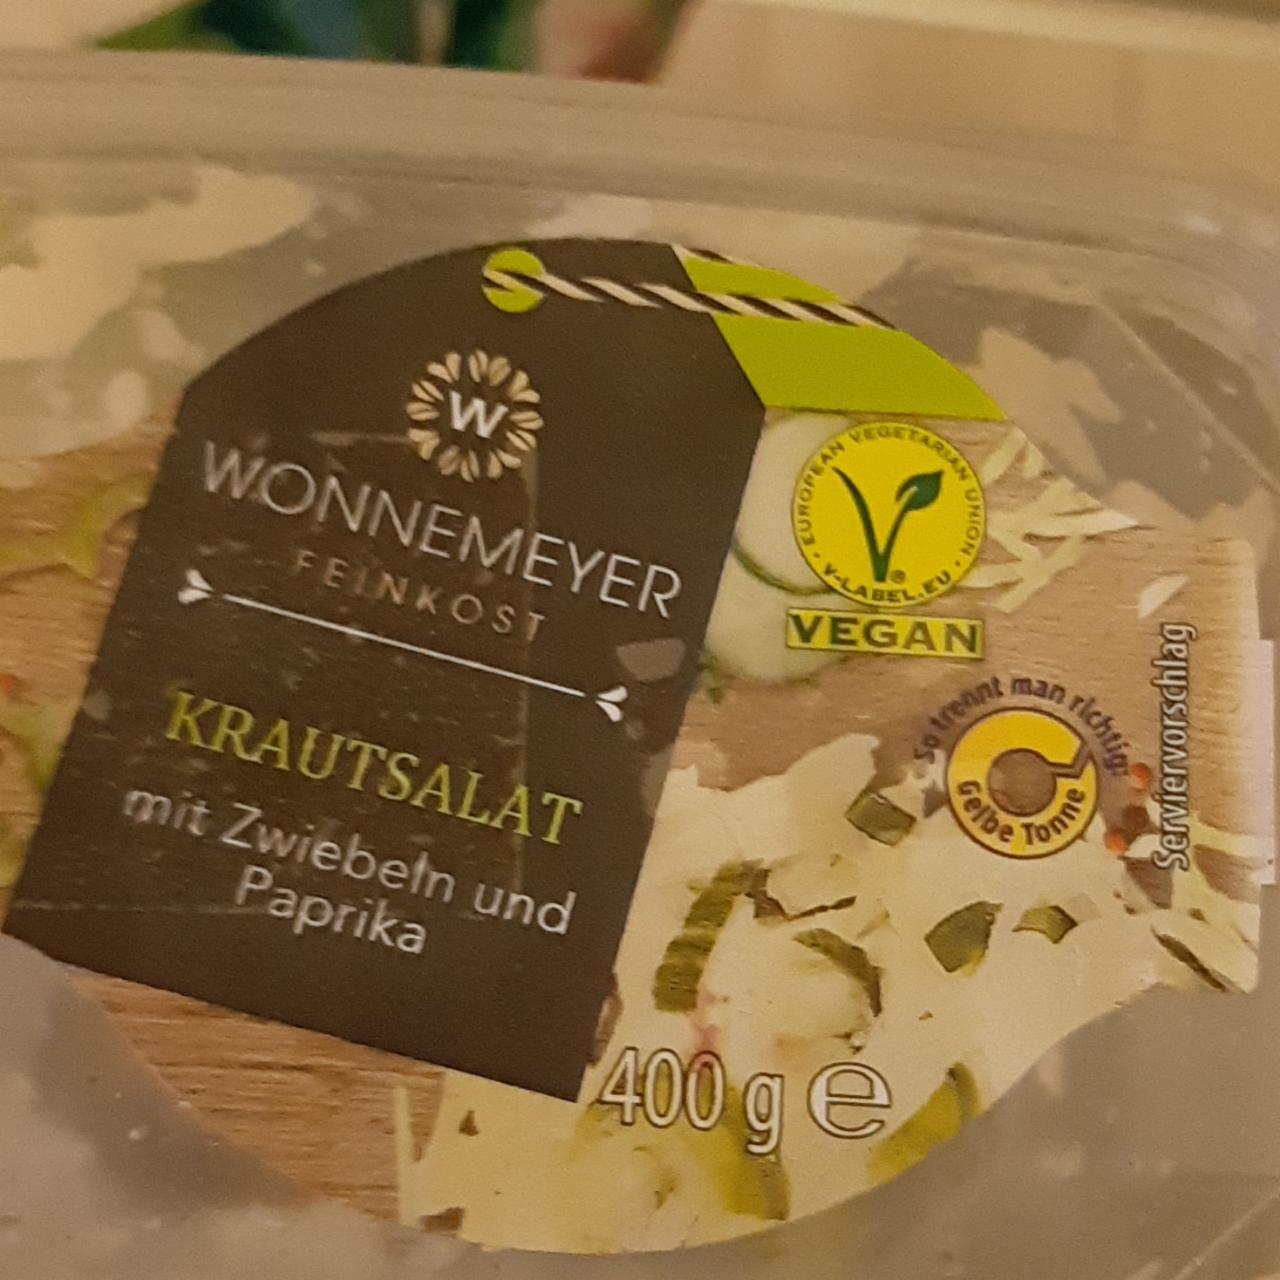 Фото - салат капустный с паприкой Wonnemeyer